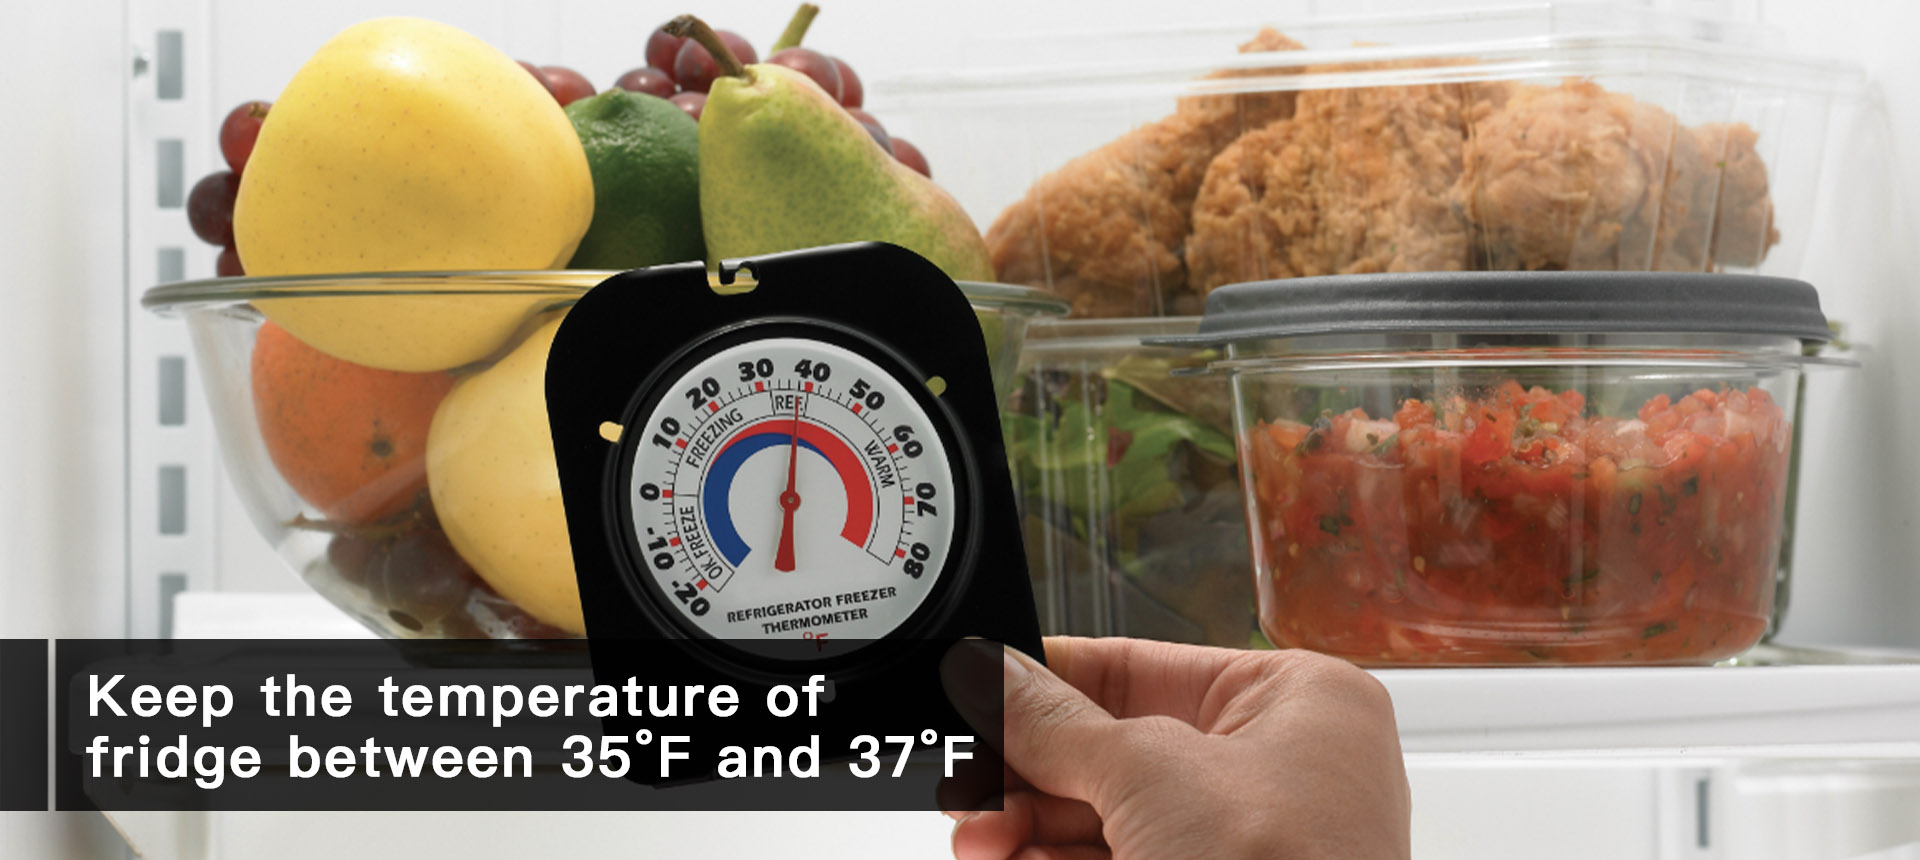 lower the temperature of fridge